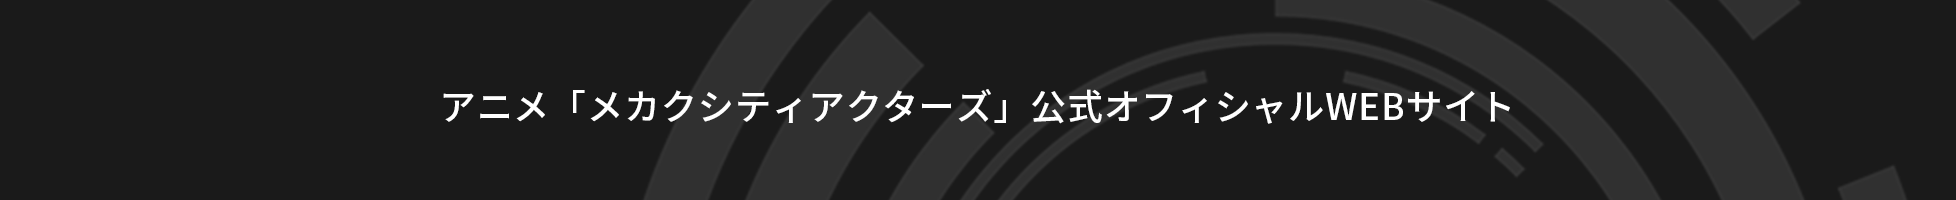 アニメ「メカクシティアクターズ」公式オフィシャルWEBサイト